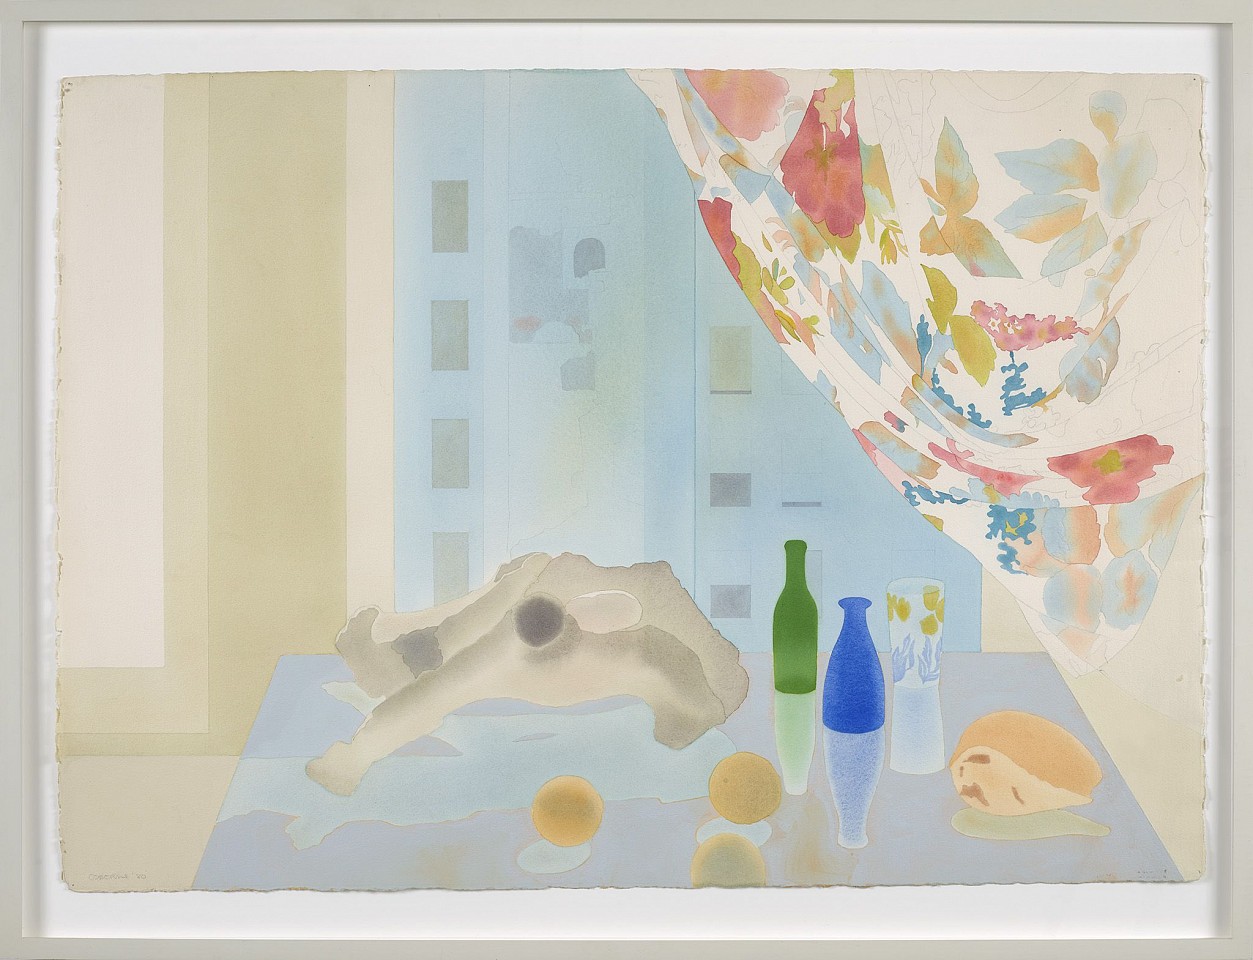 Elizabeth Osborne, Belgravia East Window | SOLD, 1980
Watercolor on paper, 29 1/2 x 41 1/2 in. (74.9 x 105.4 cm)
OSB-00059